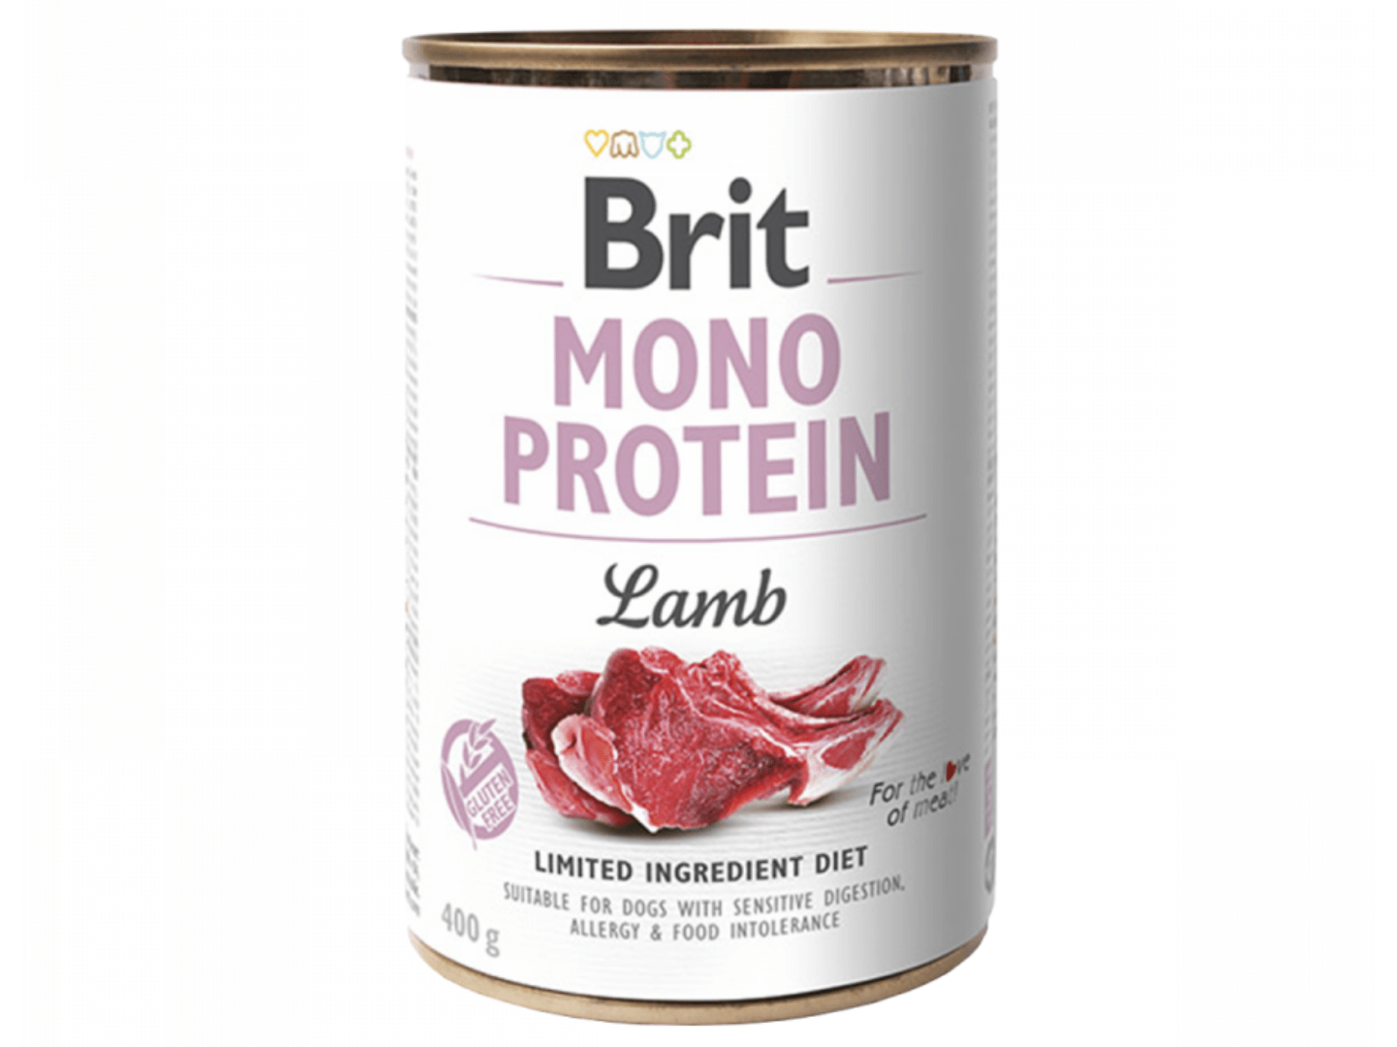 Brit Mono Protein Lamb 400 g